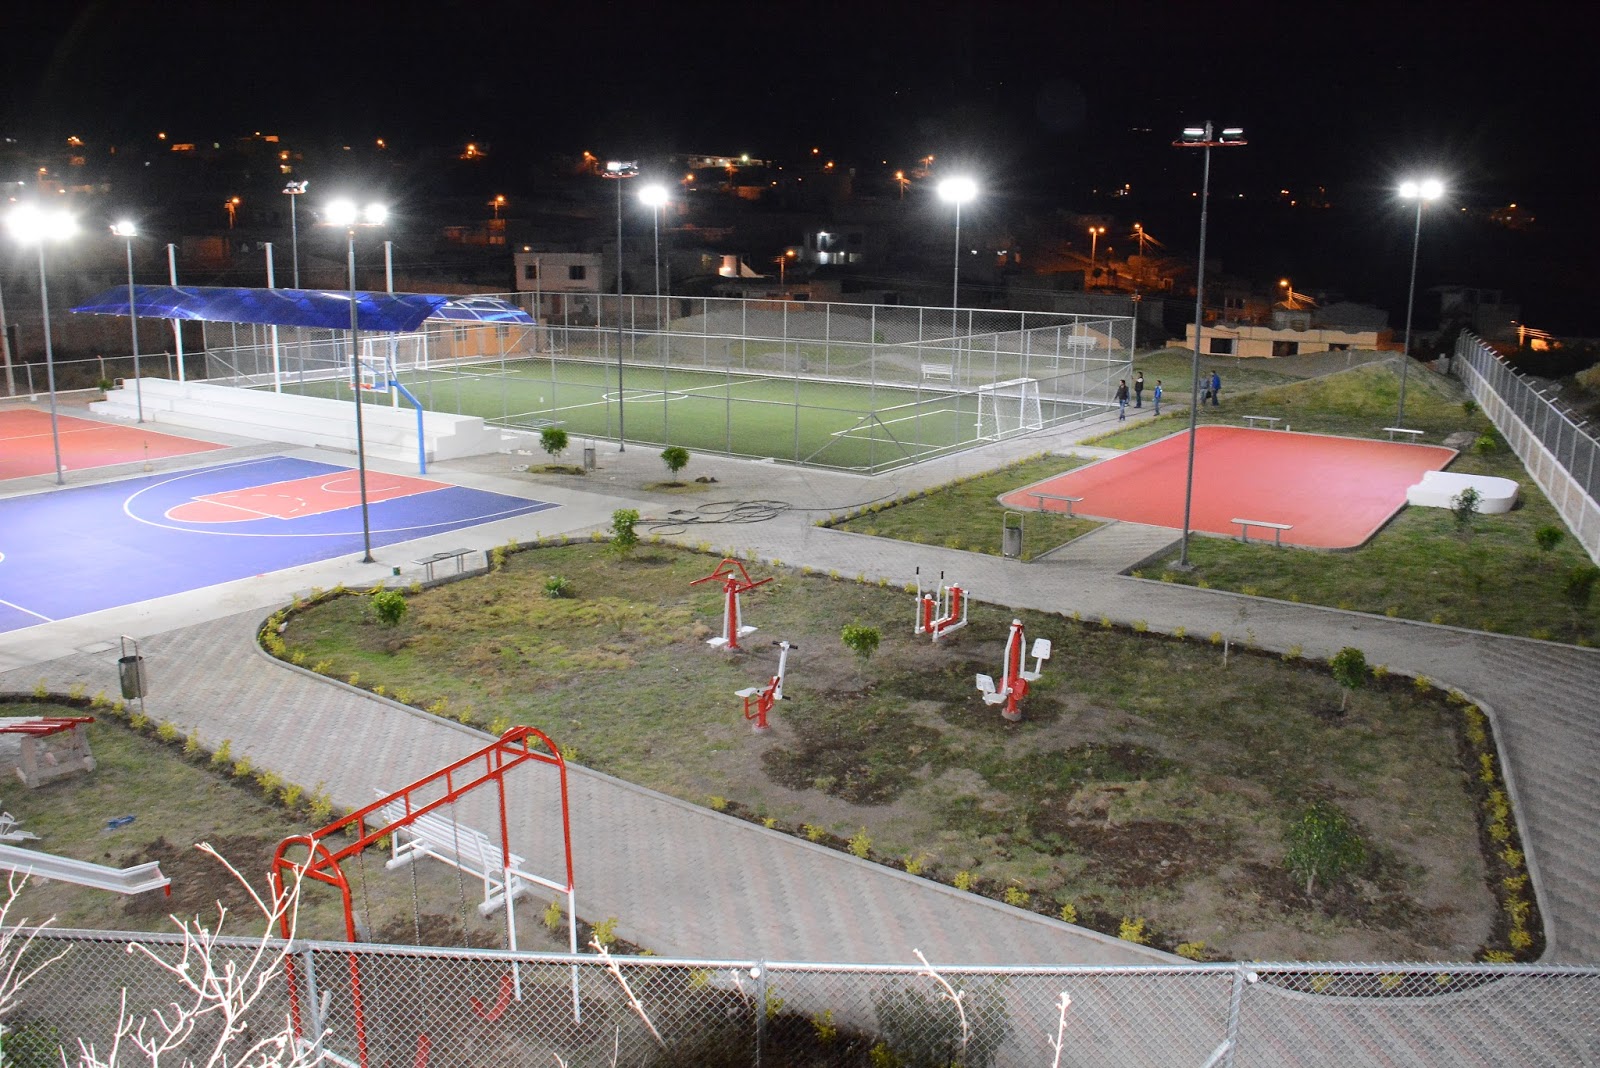 Espacios. Los polideportivos son áreas públicas que conjugan canchas deportivas, juegos infantiles y espacios verdes, principalmente.